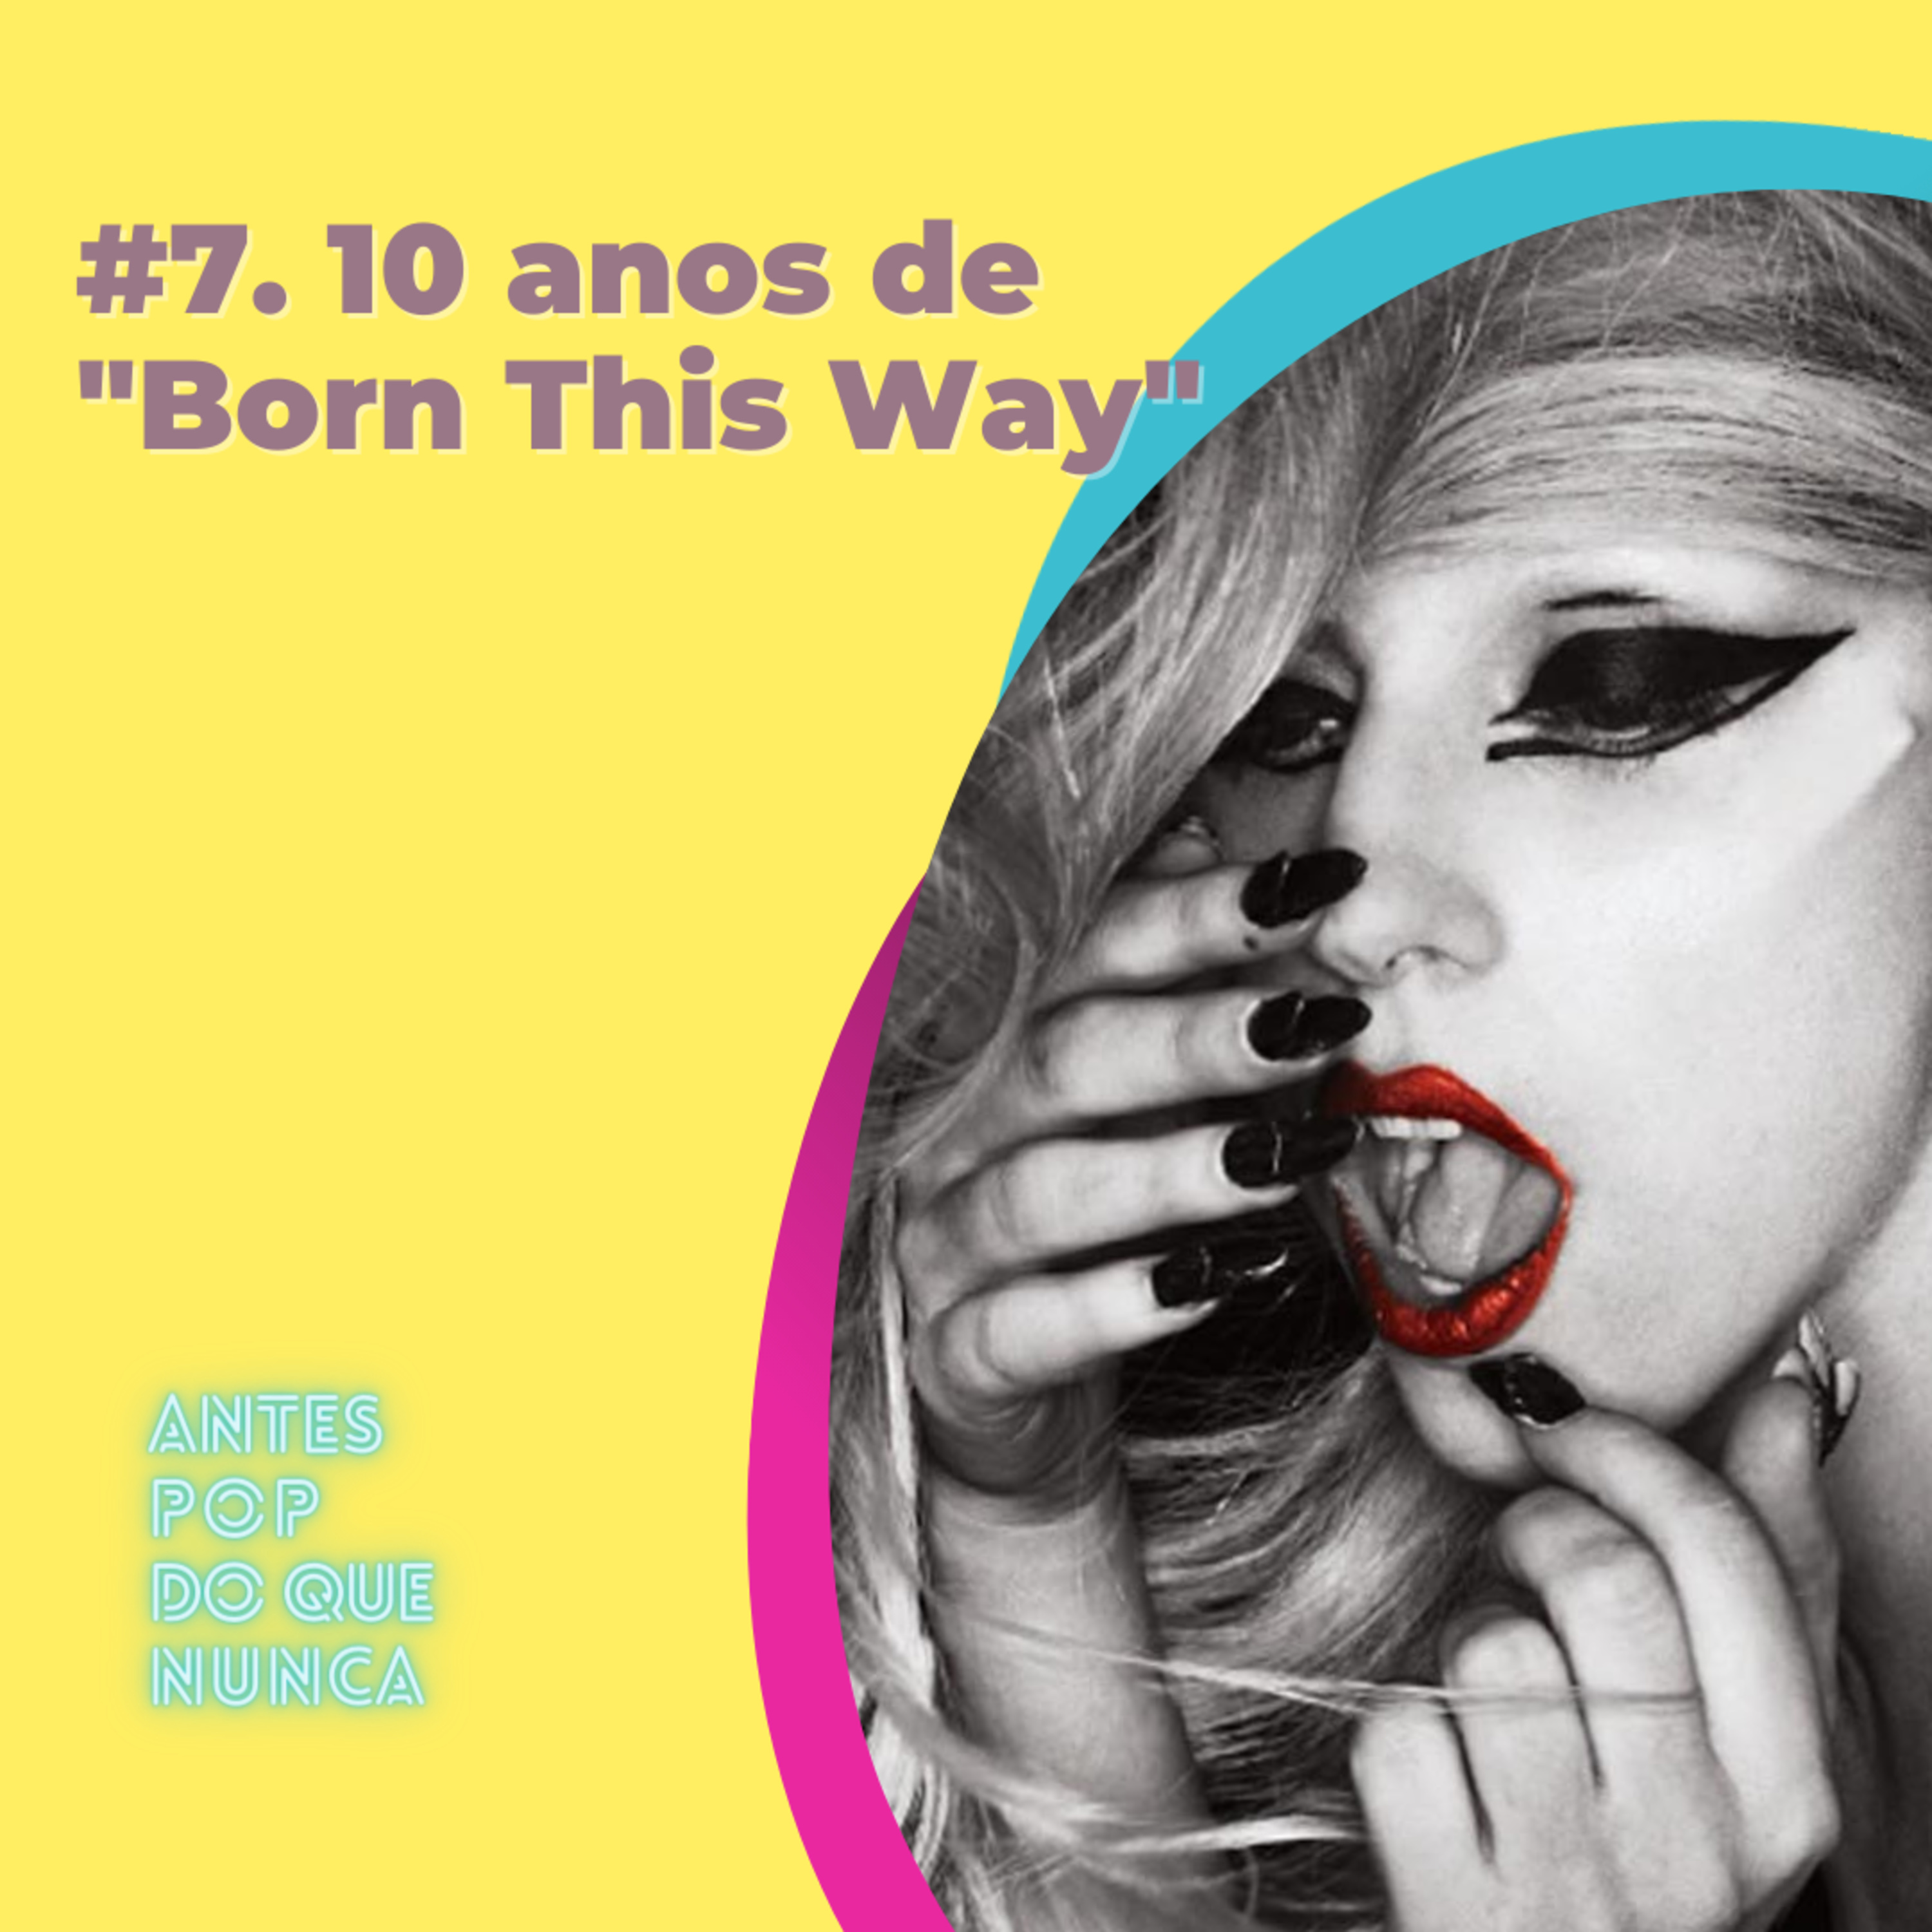 #7. 10 anos de “Born this Way